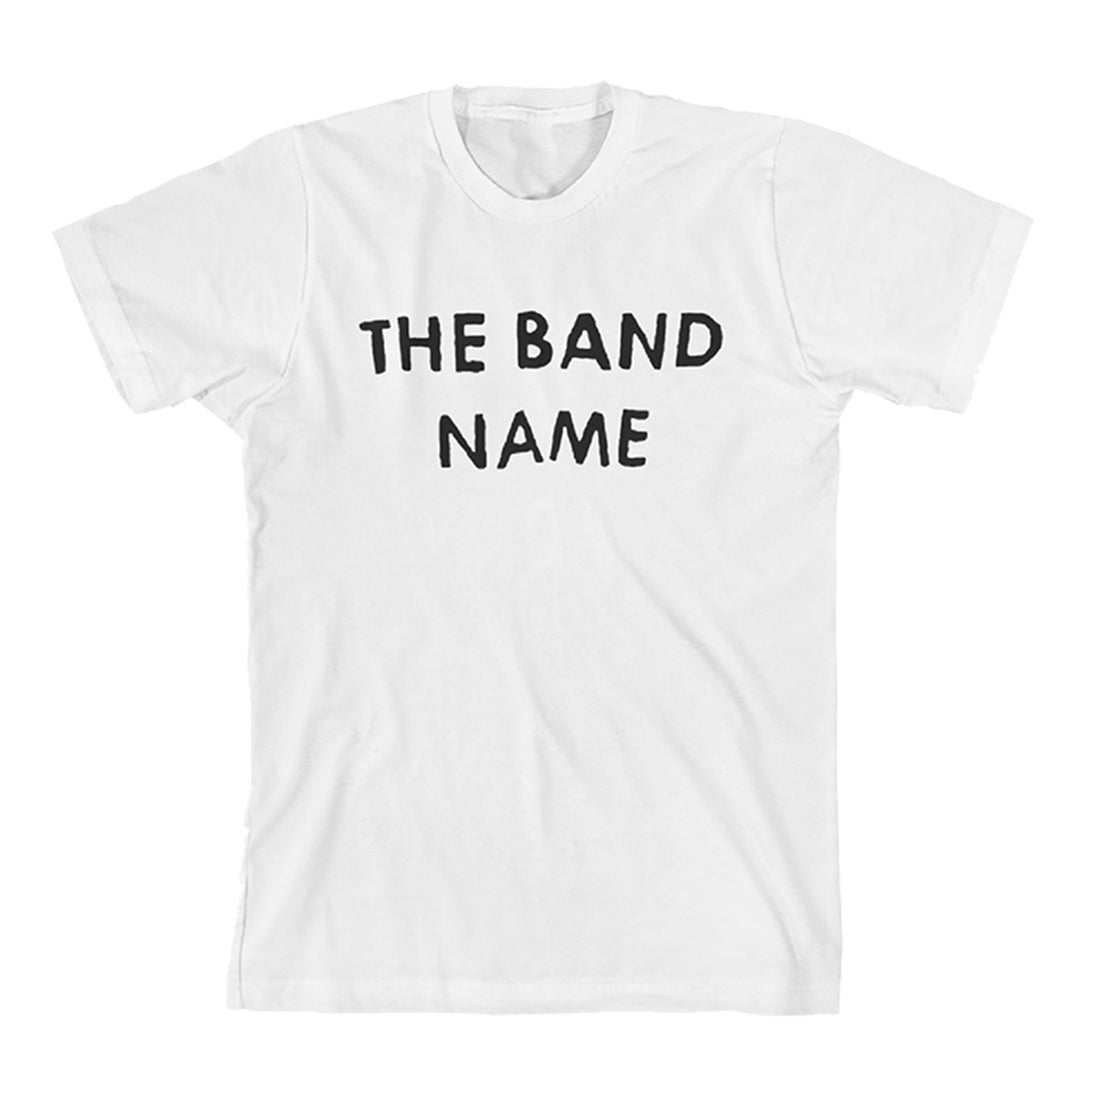 The Band Name Tee